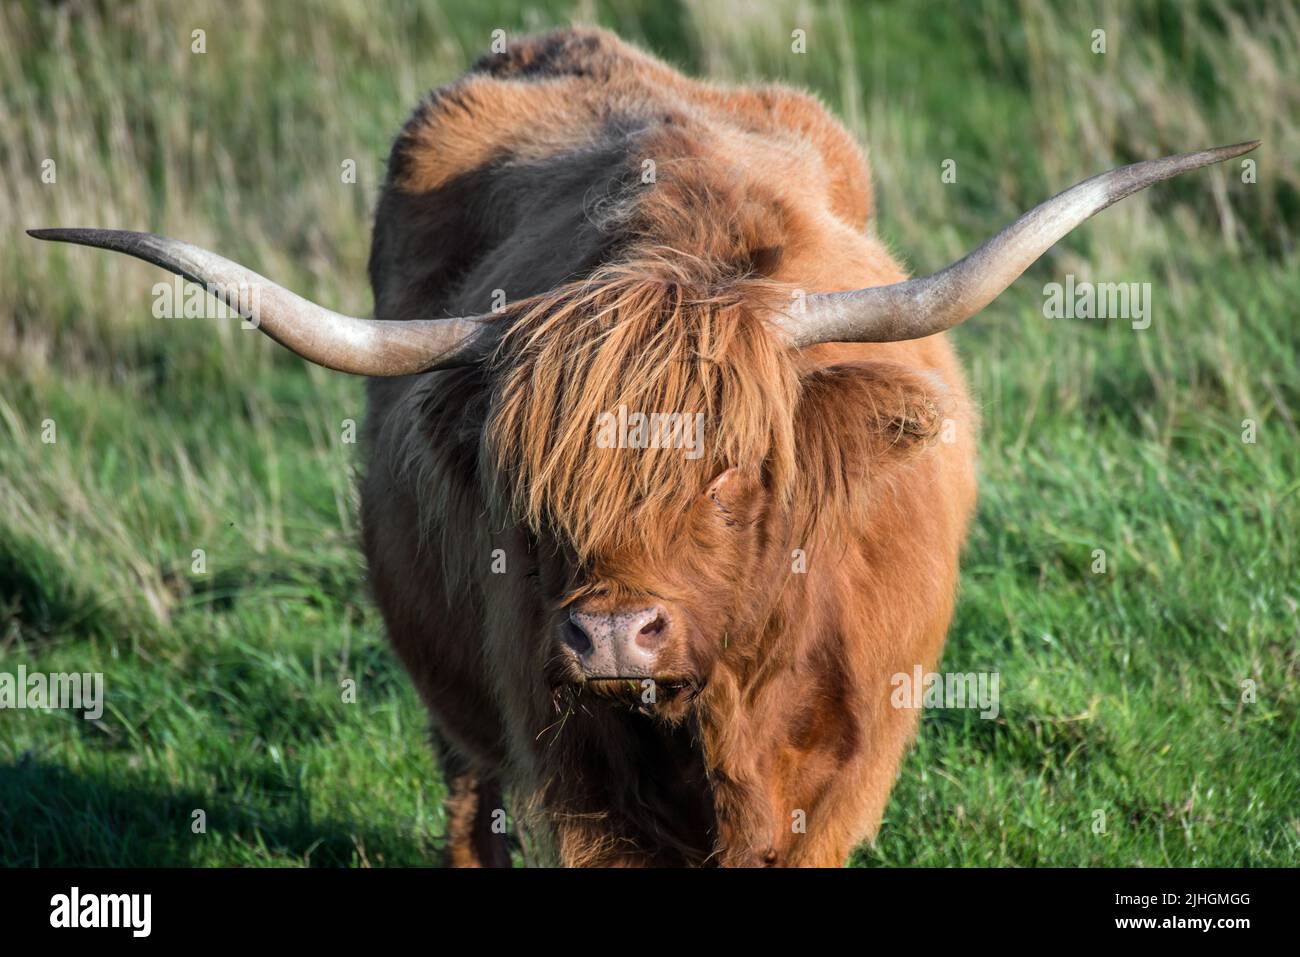 Eine Highland Cow (Bos taurus taurus) mit ihren klassischen langen Hörnern und ihrem zotteligen Fell Stockfoto